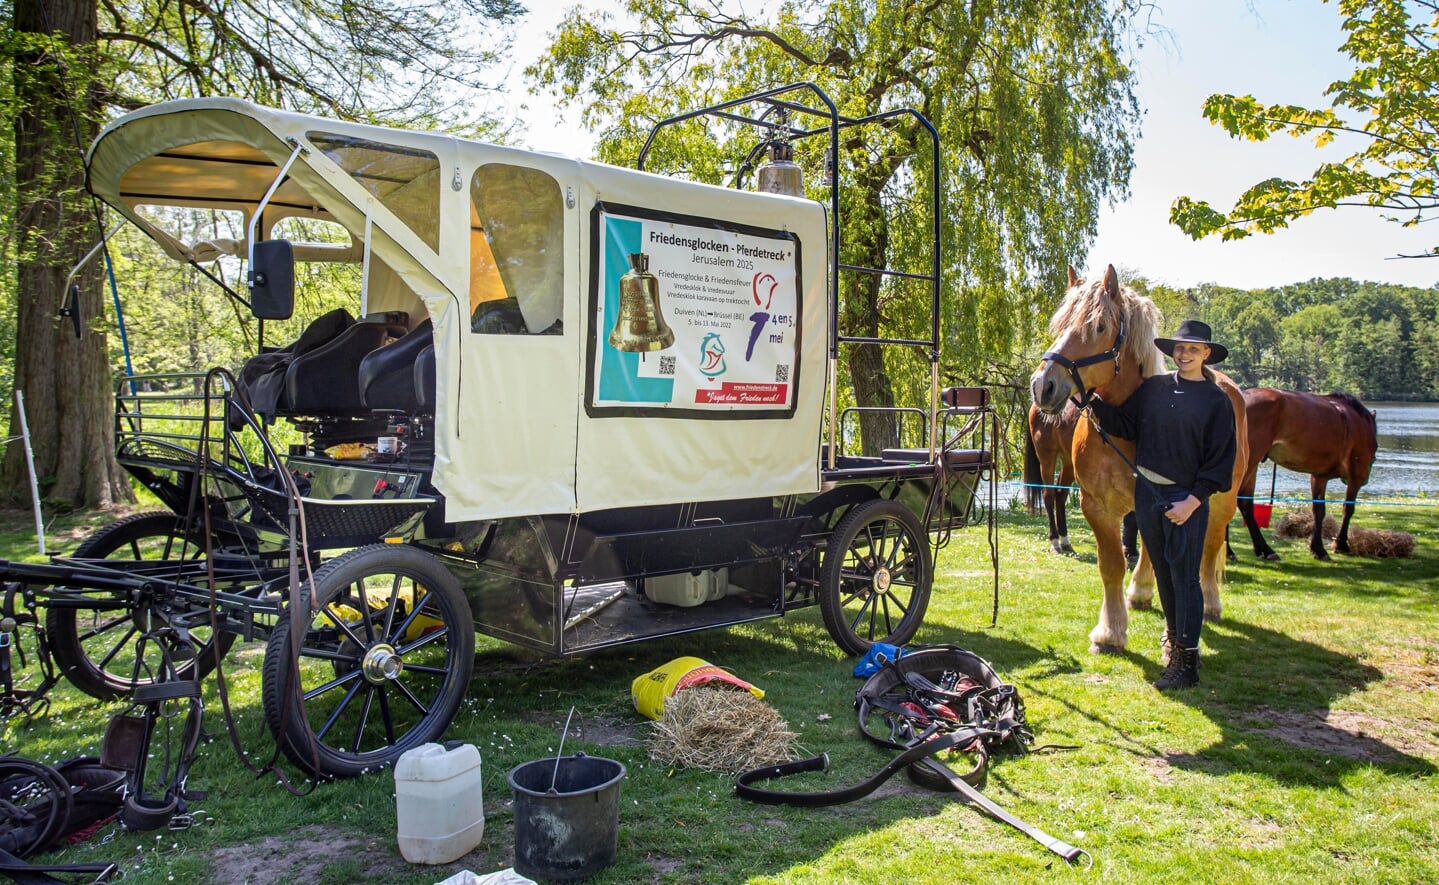 De vredeskaravaan met paard en wagens hield zondagmiddag even halt in park Molenwijk in Boxtel. De groep was op weg naar Waterloo in België.